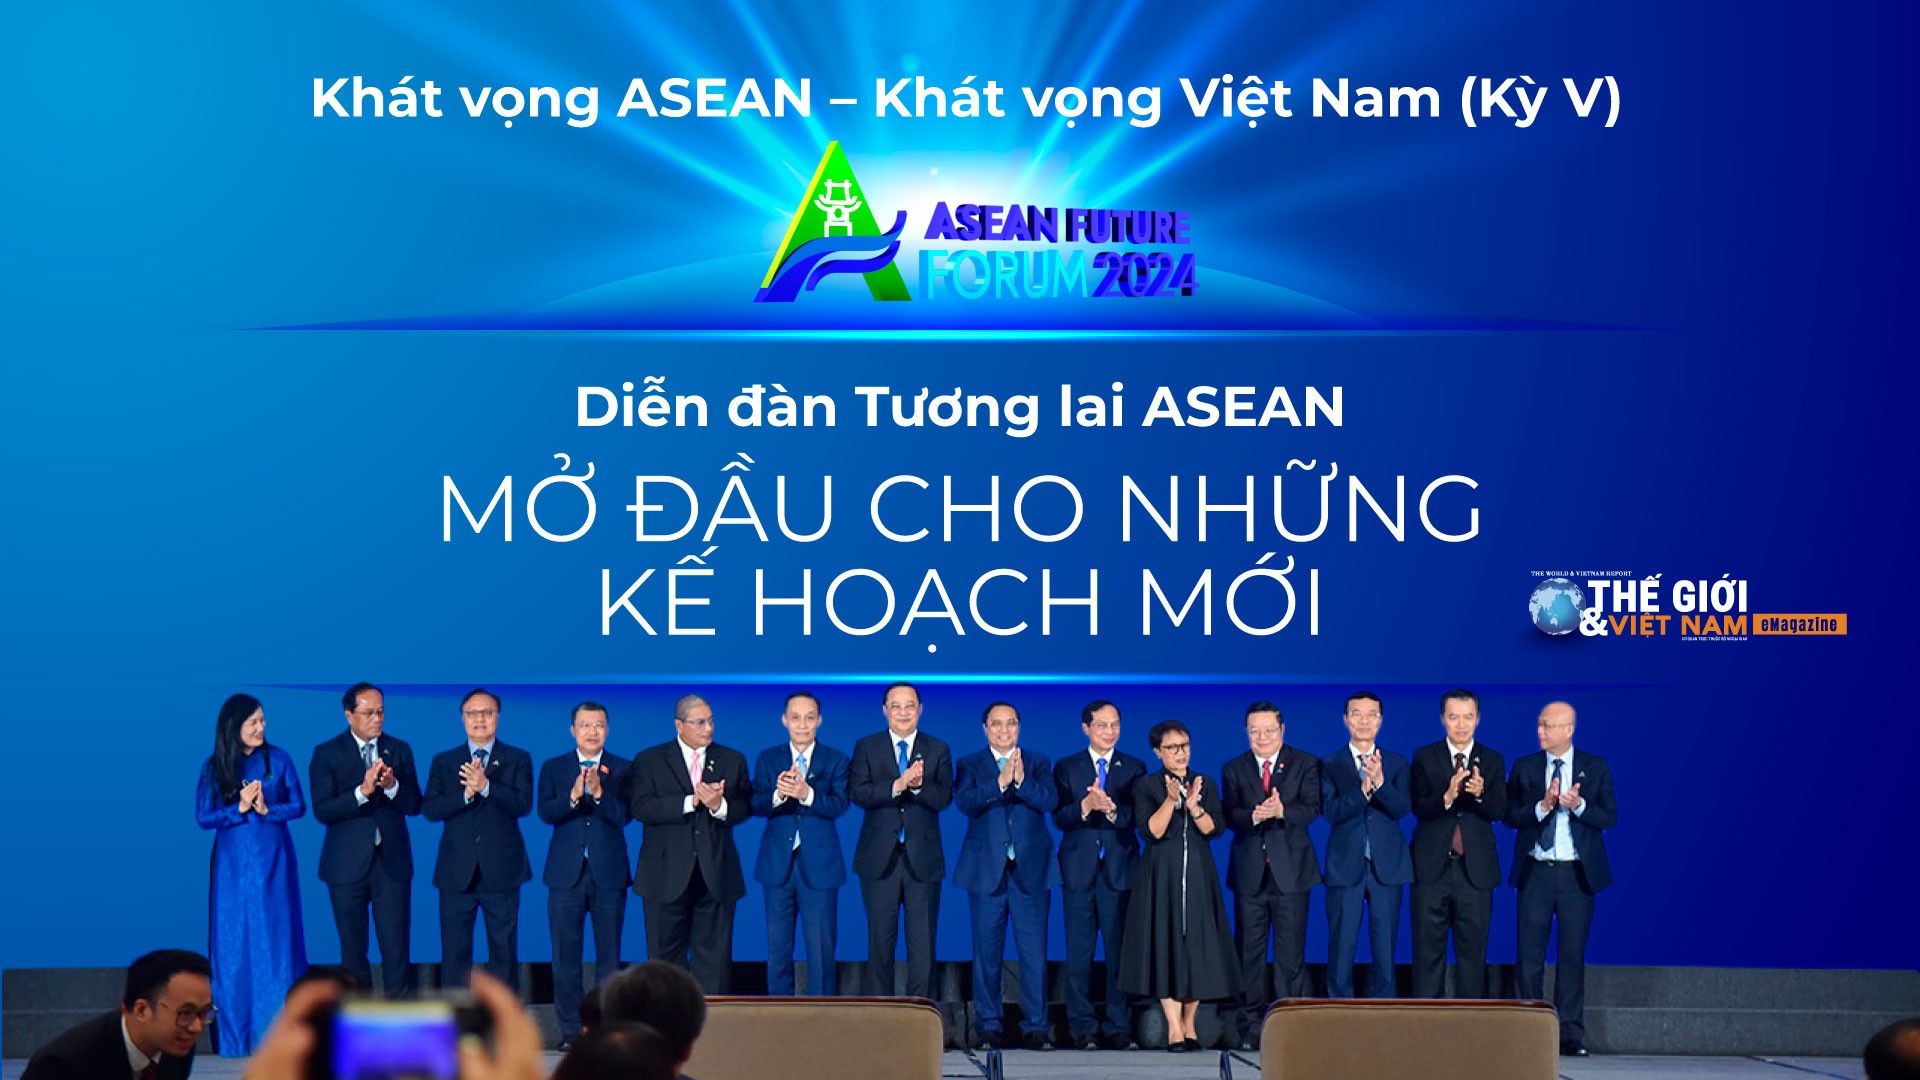 Diễn đàn Tương lai ASEAN: Mở đầu cho những kế hoạch mới